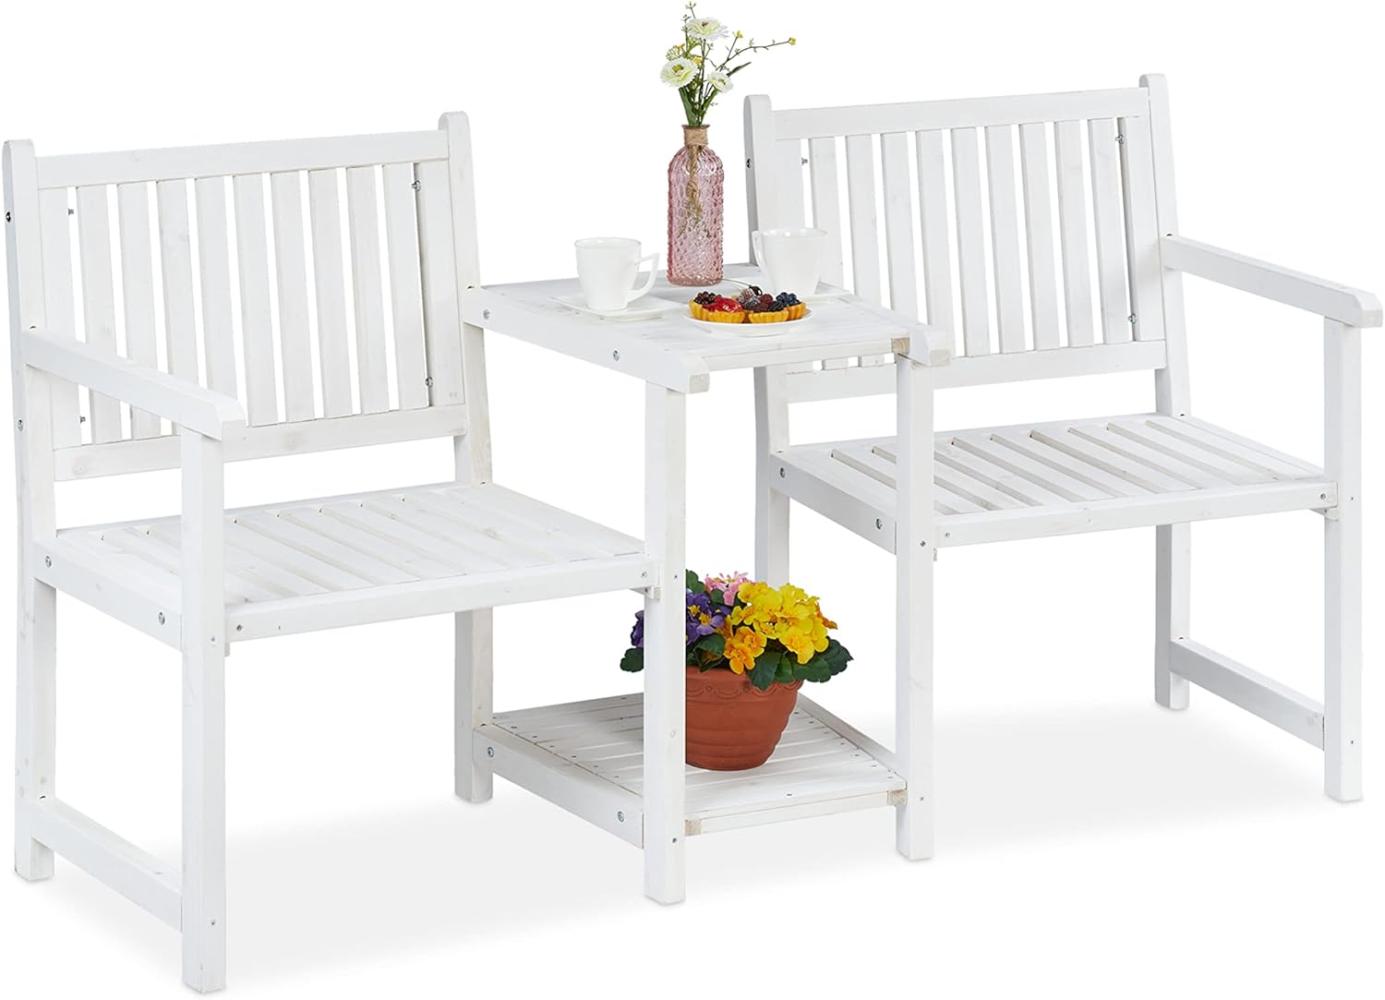 Relaxdays Gartenbank mit integriertem Tisch, 2-Sitzer, robuste Holz Sitzbank, HBT: 86x161x61 cm, Garten & Balkon, weiß Bild 1